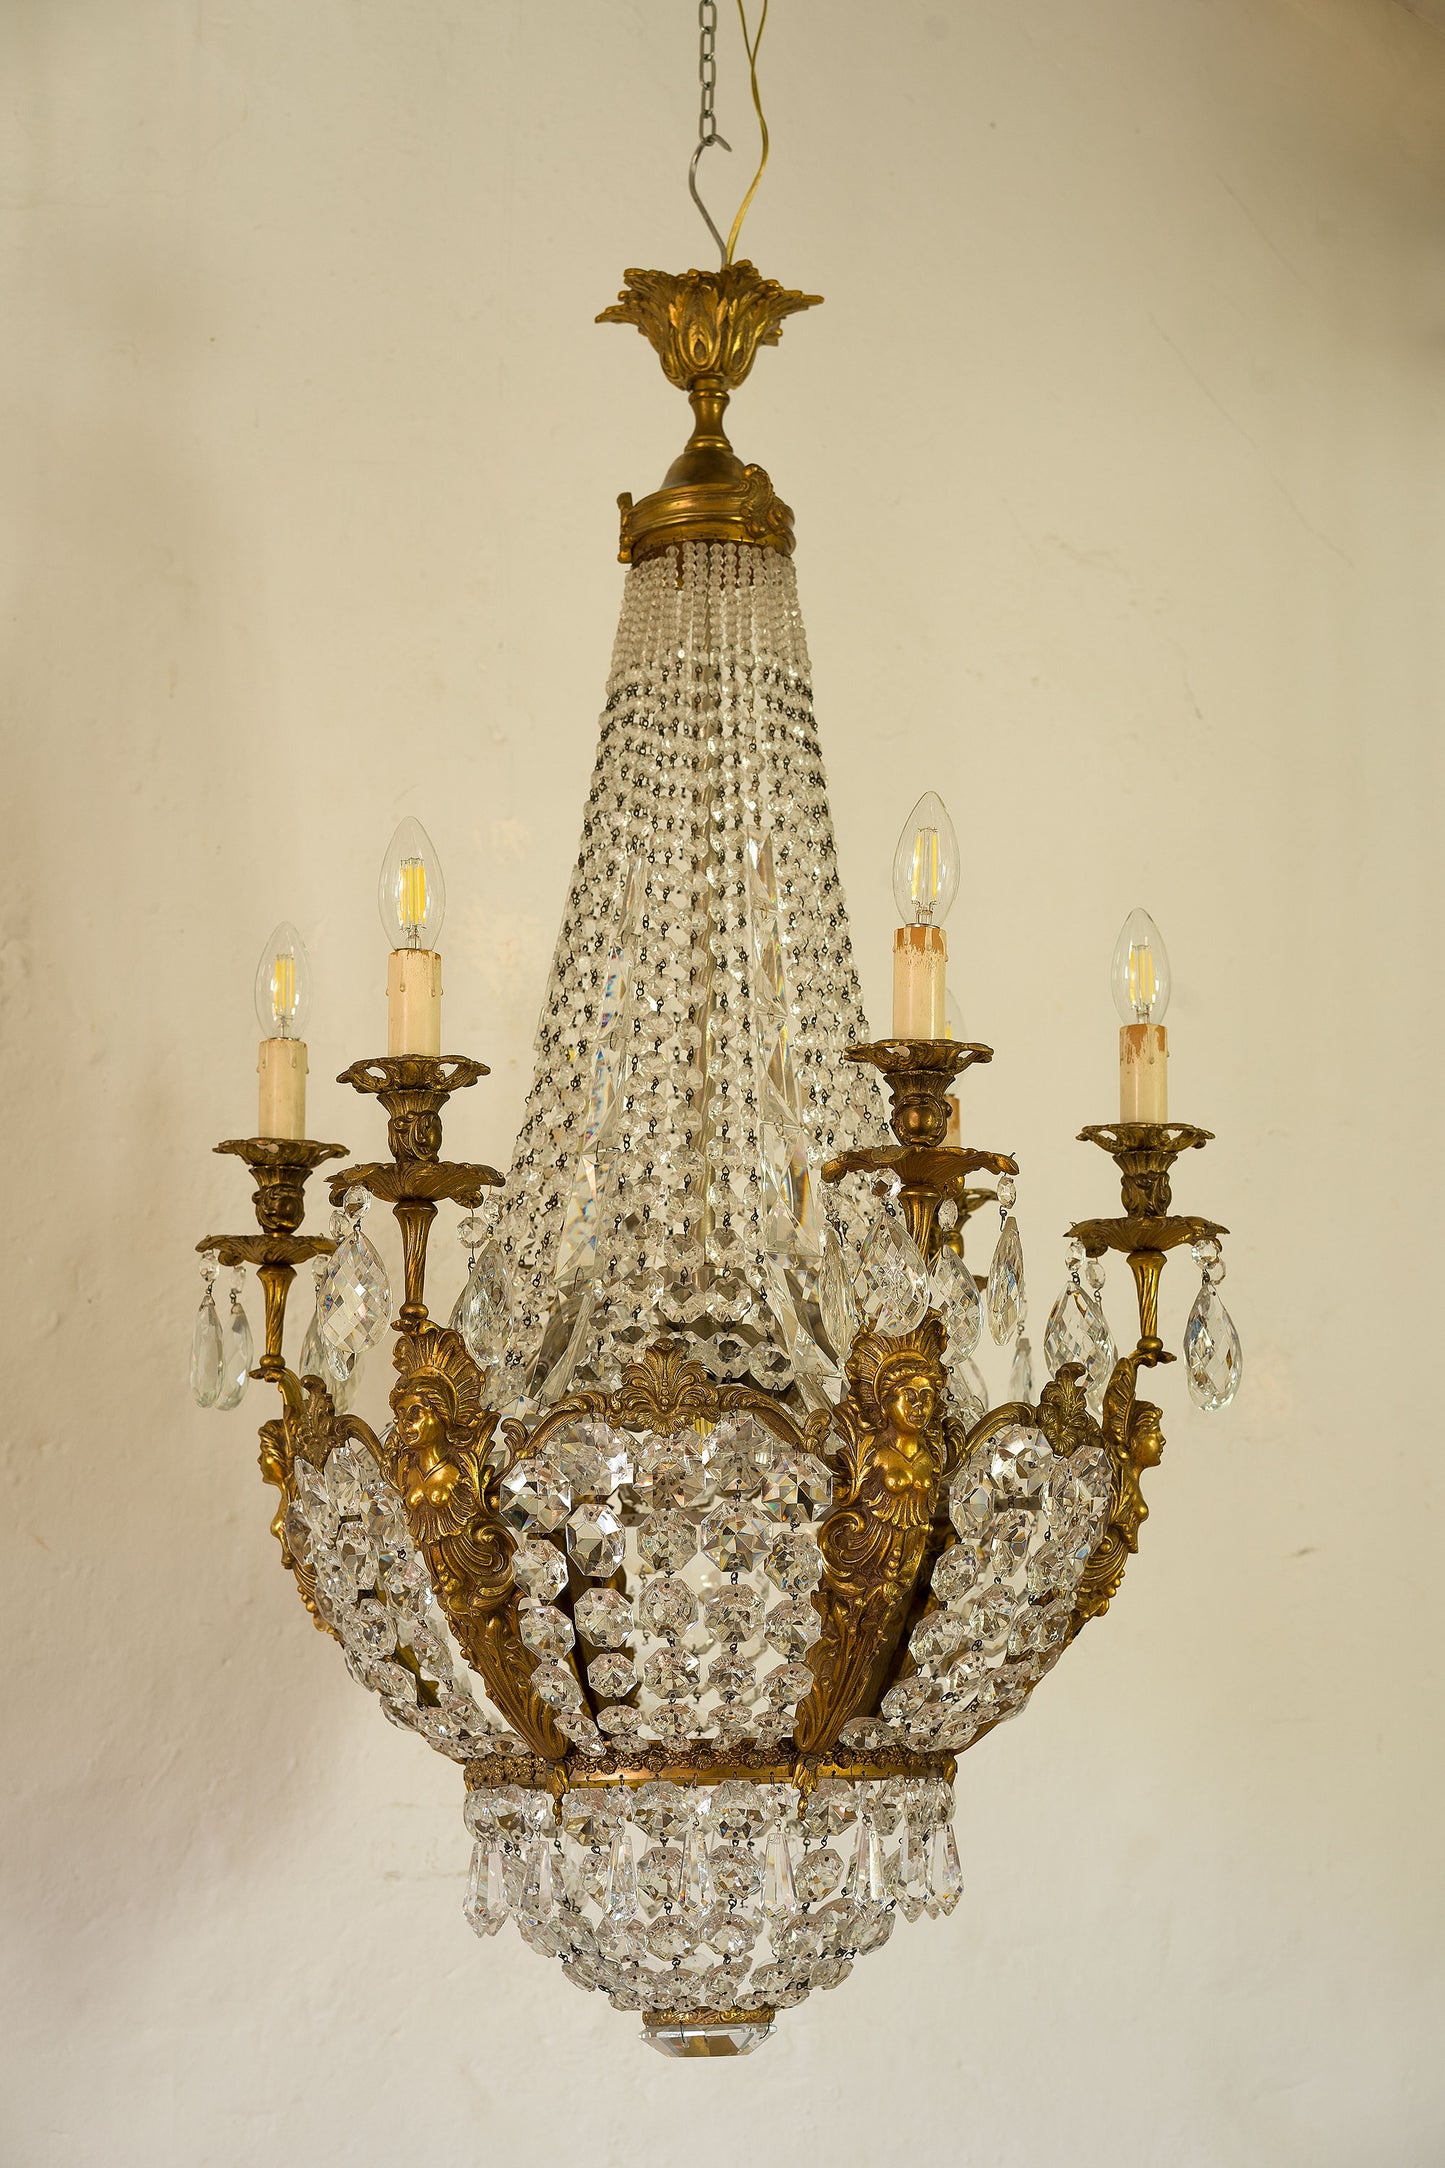 Lampadario Stile Impero con gocce di cristallo pendenti, la struttura bronzo dorato è abbellita da 6 sfingi che sorreggono le candele-Lo Stile Italiano